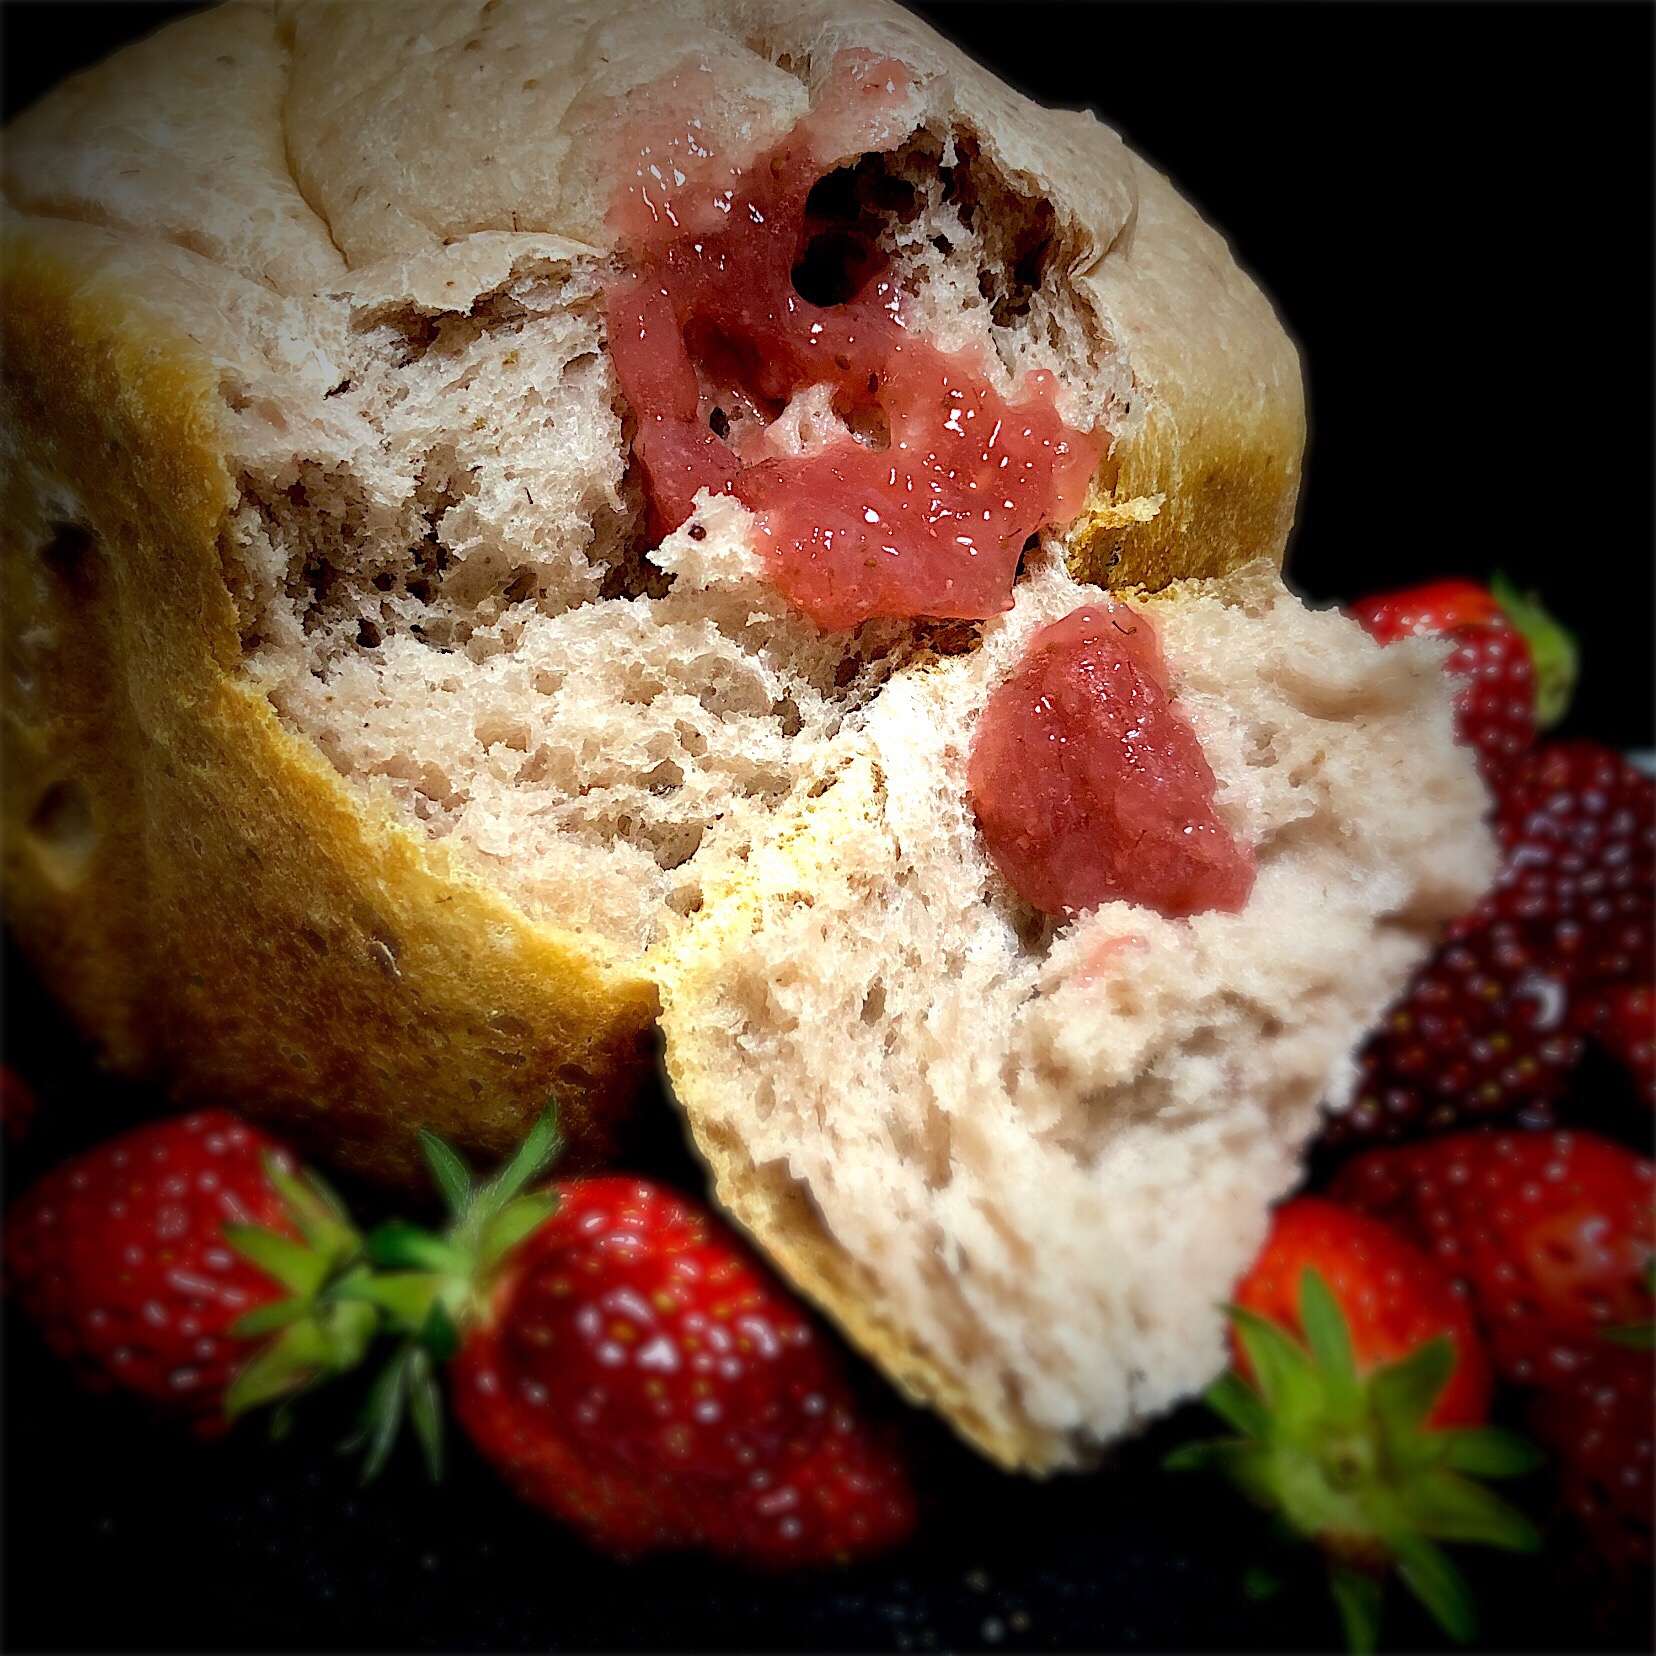 ももさんの料理 何と水分はミカンだけ(((o(*ﾟ▽ﾟ*)o)))みかんで焼くみかん食パン‼をイチゴ?で！#イチゴのマシュマロジャム ?